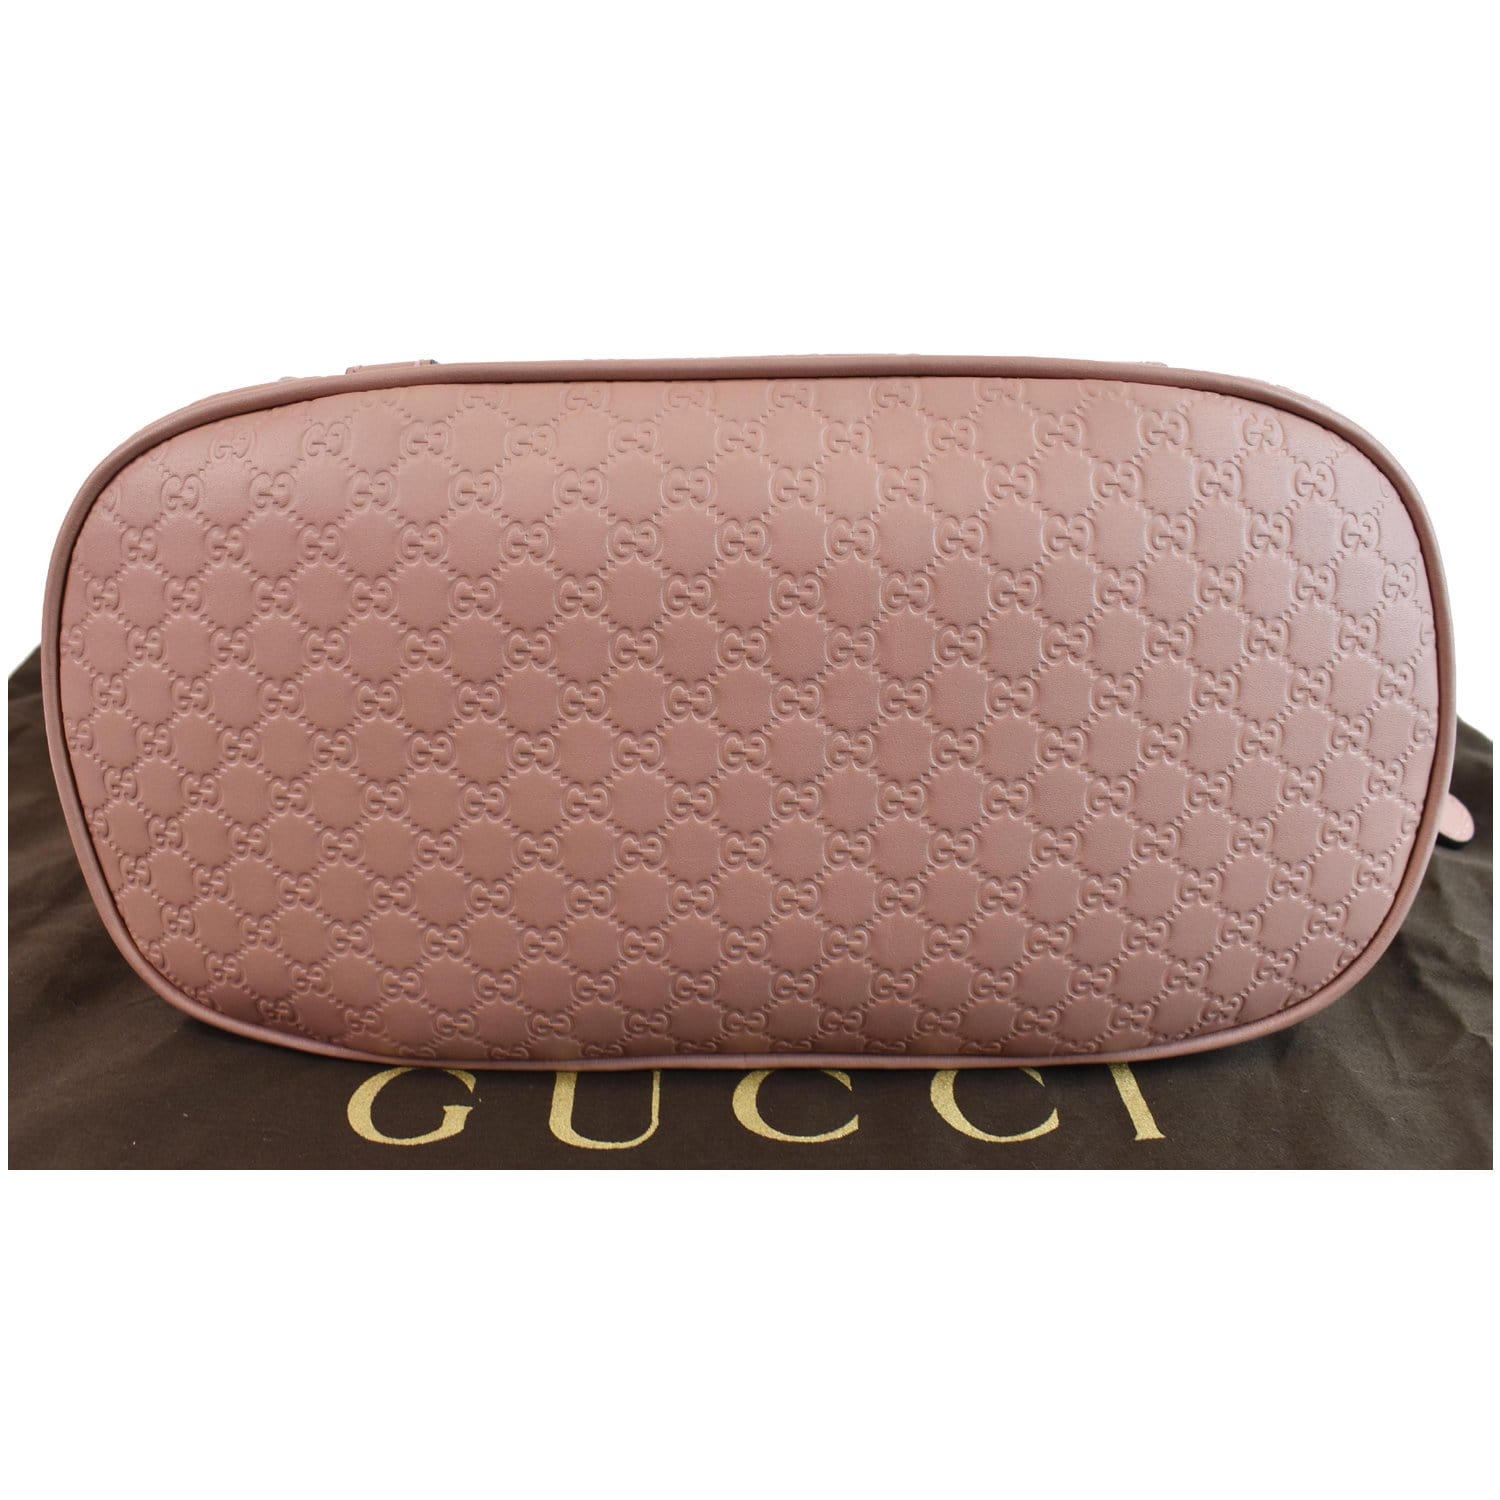 Gucci microguccissima gg mini dome bag